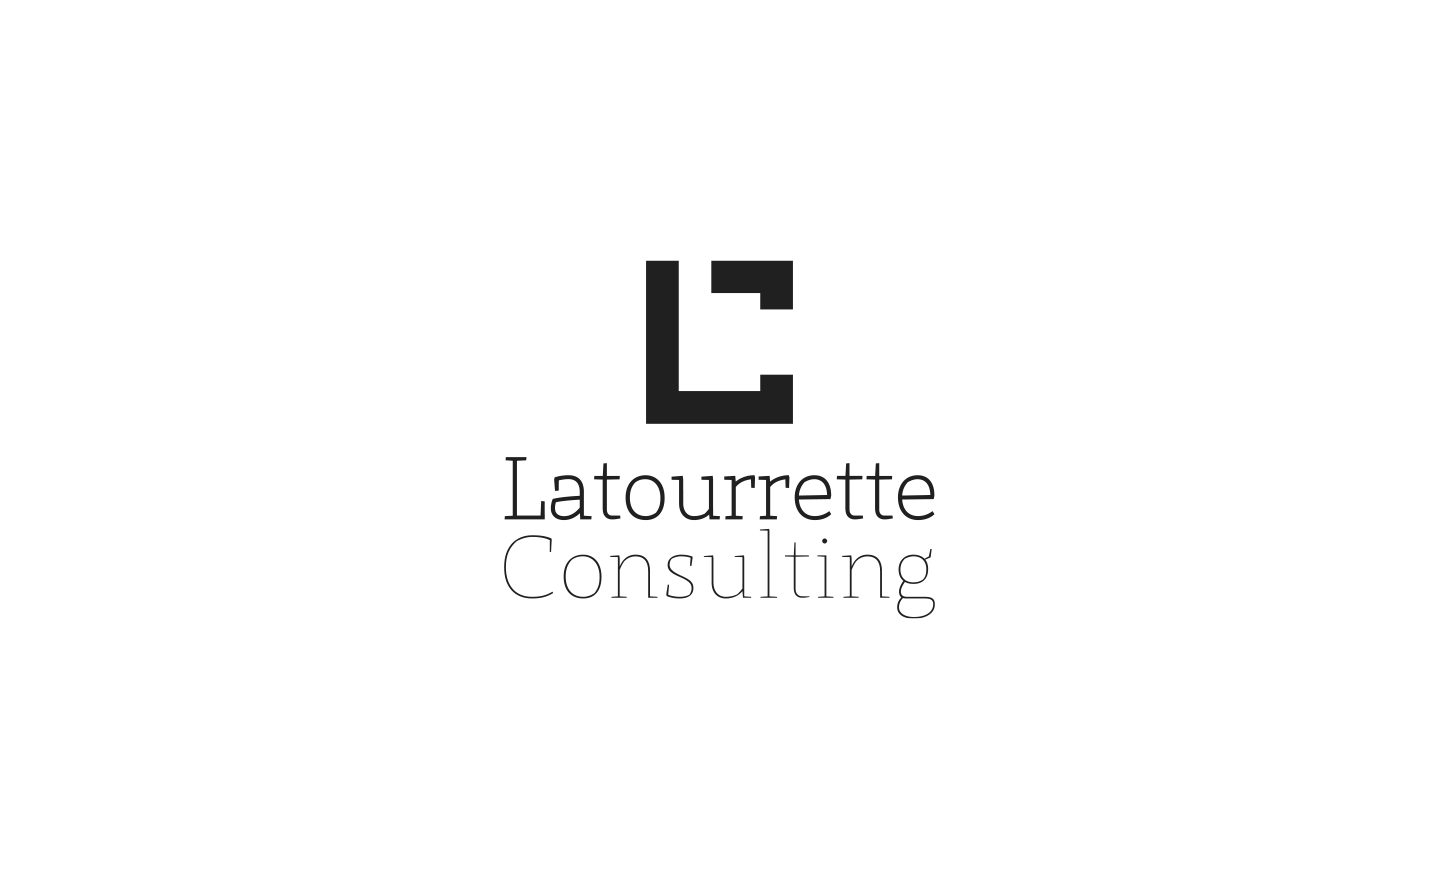 Latourrette Consulting identidade